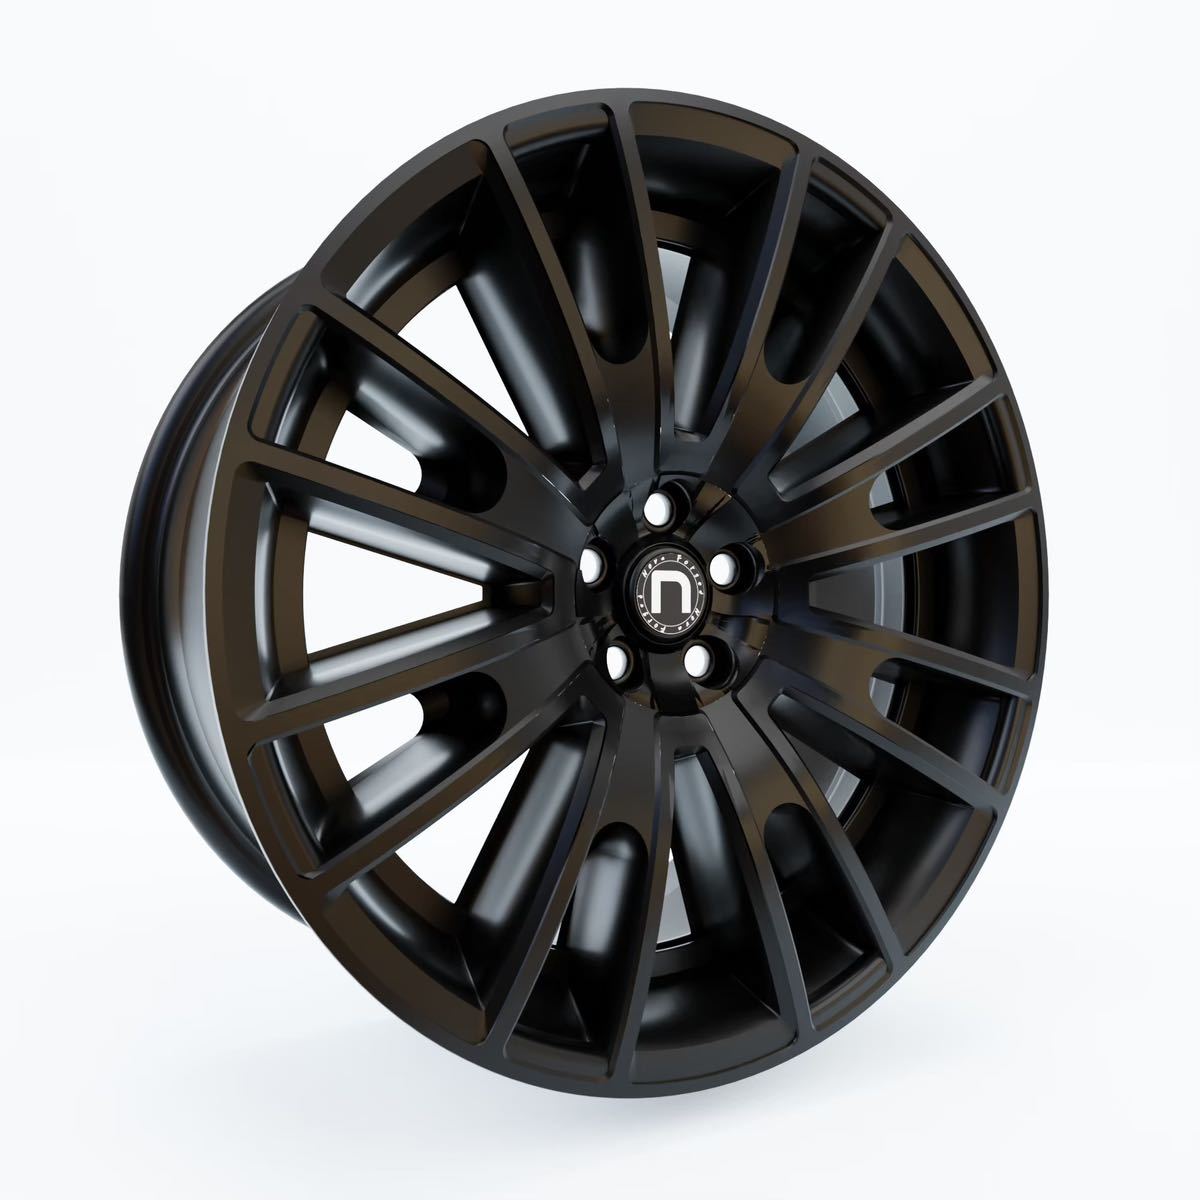 novaForged24 -inch forged wheel 4ps.@BMW X6 X7 Audi Q8 Land Cruiser 200 Land Cruiser 300 Ford F-150lapta- etc. *PCD etc. custom possibility 16-26 -inch 